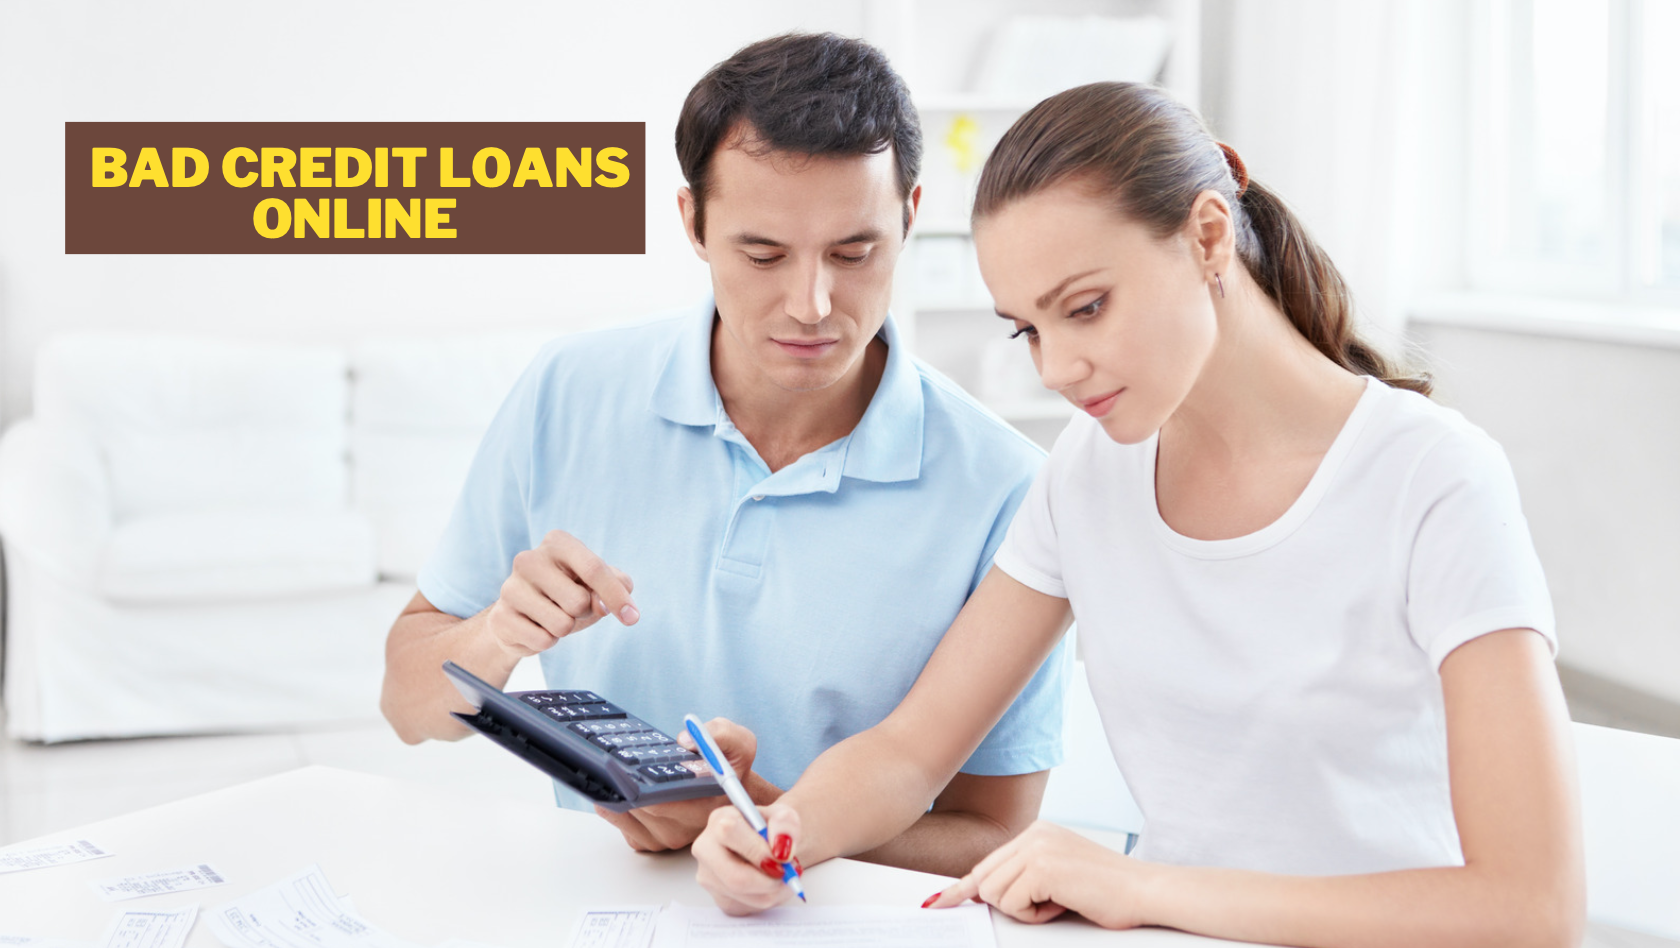 Půjčky špatné úvěry online – jak získat schválení online